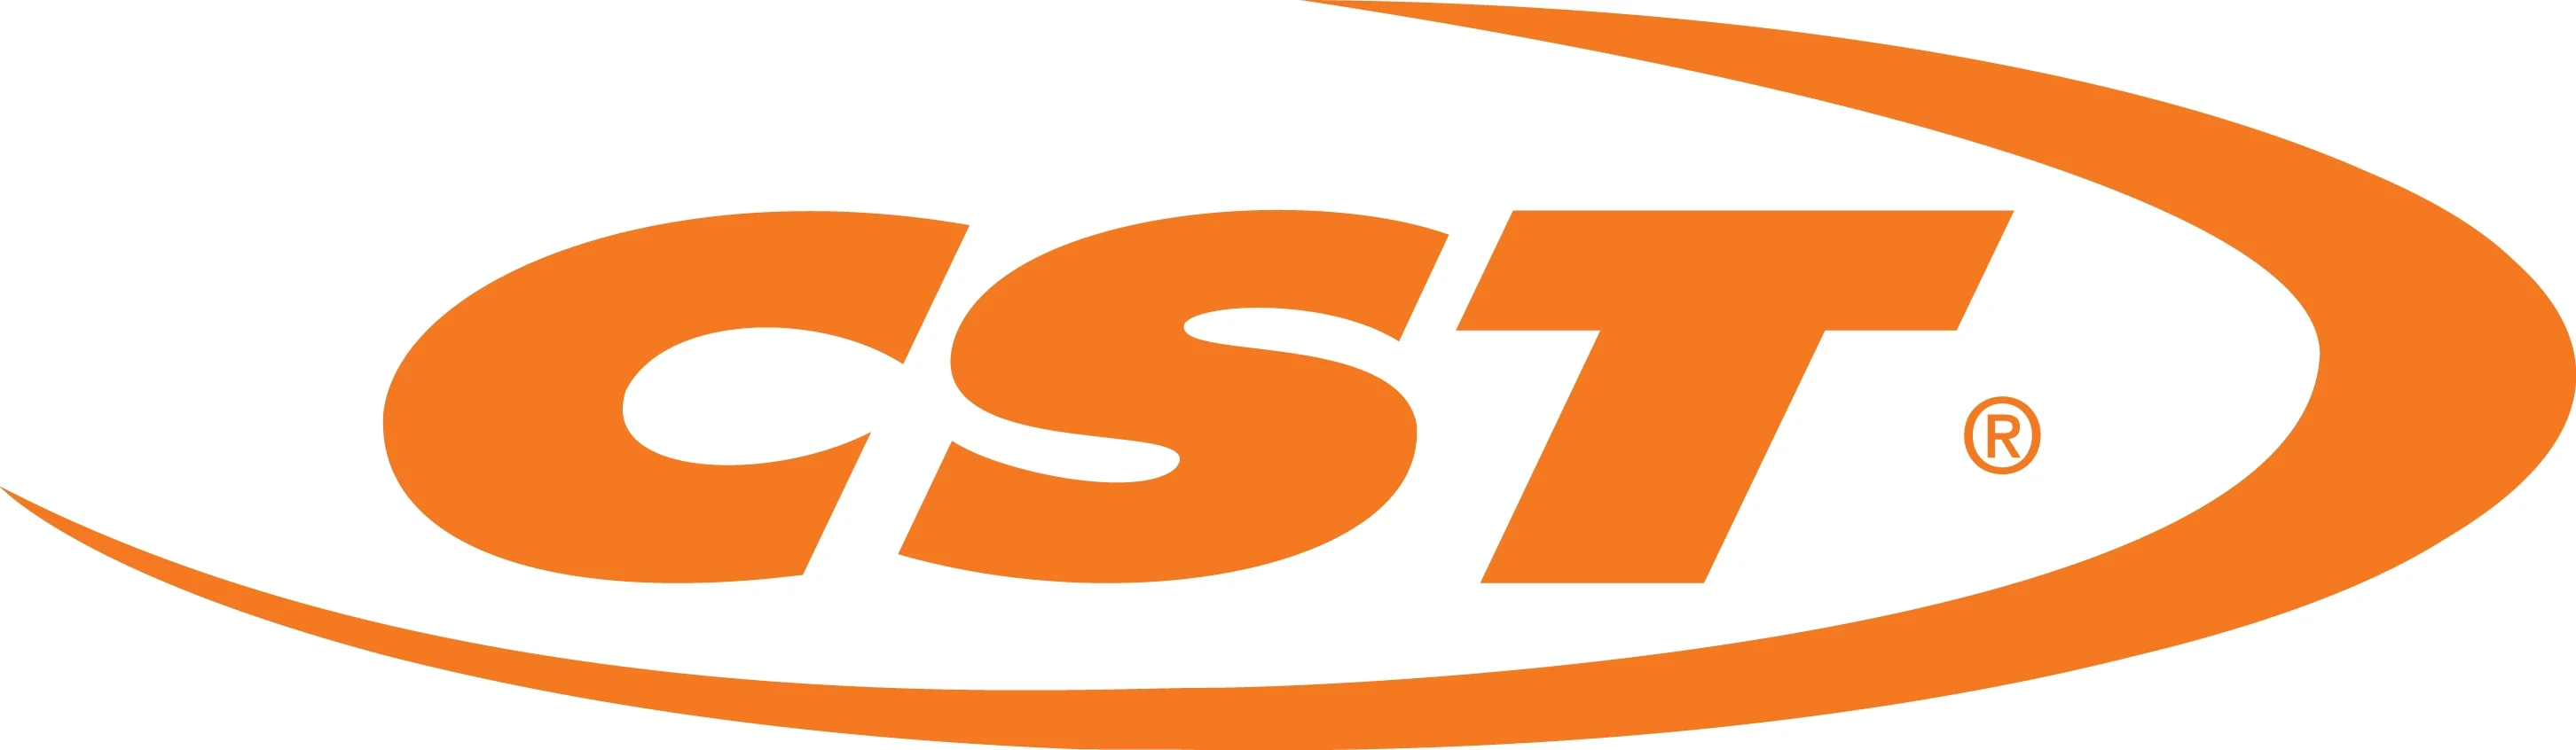 logo Cst